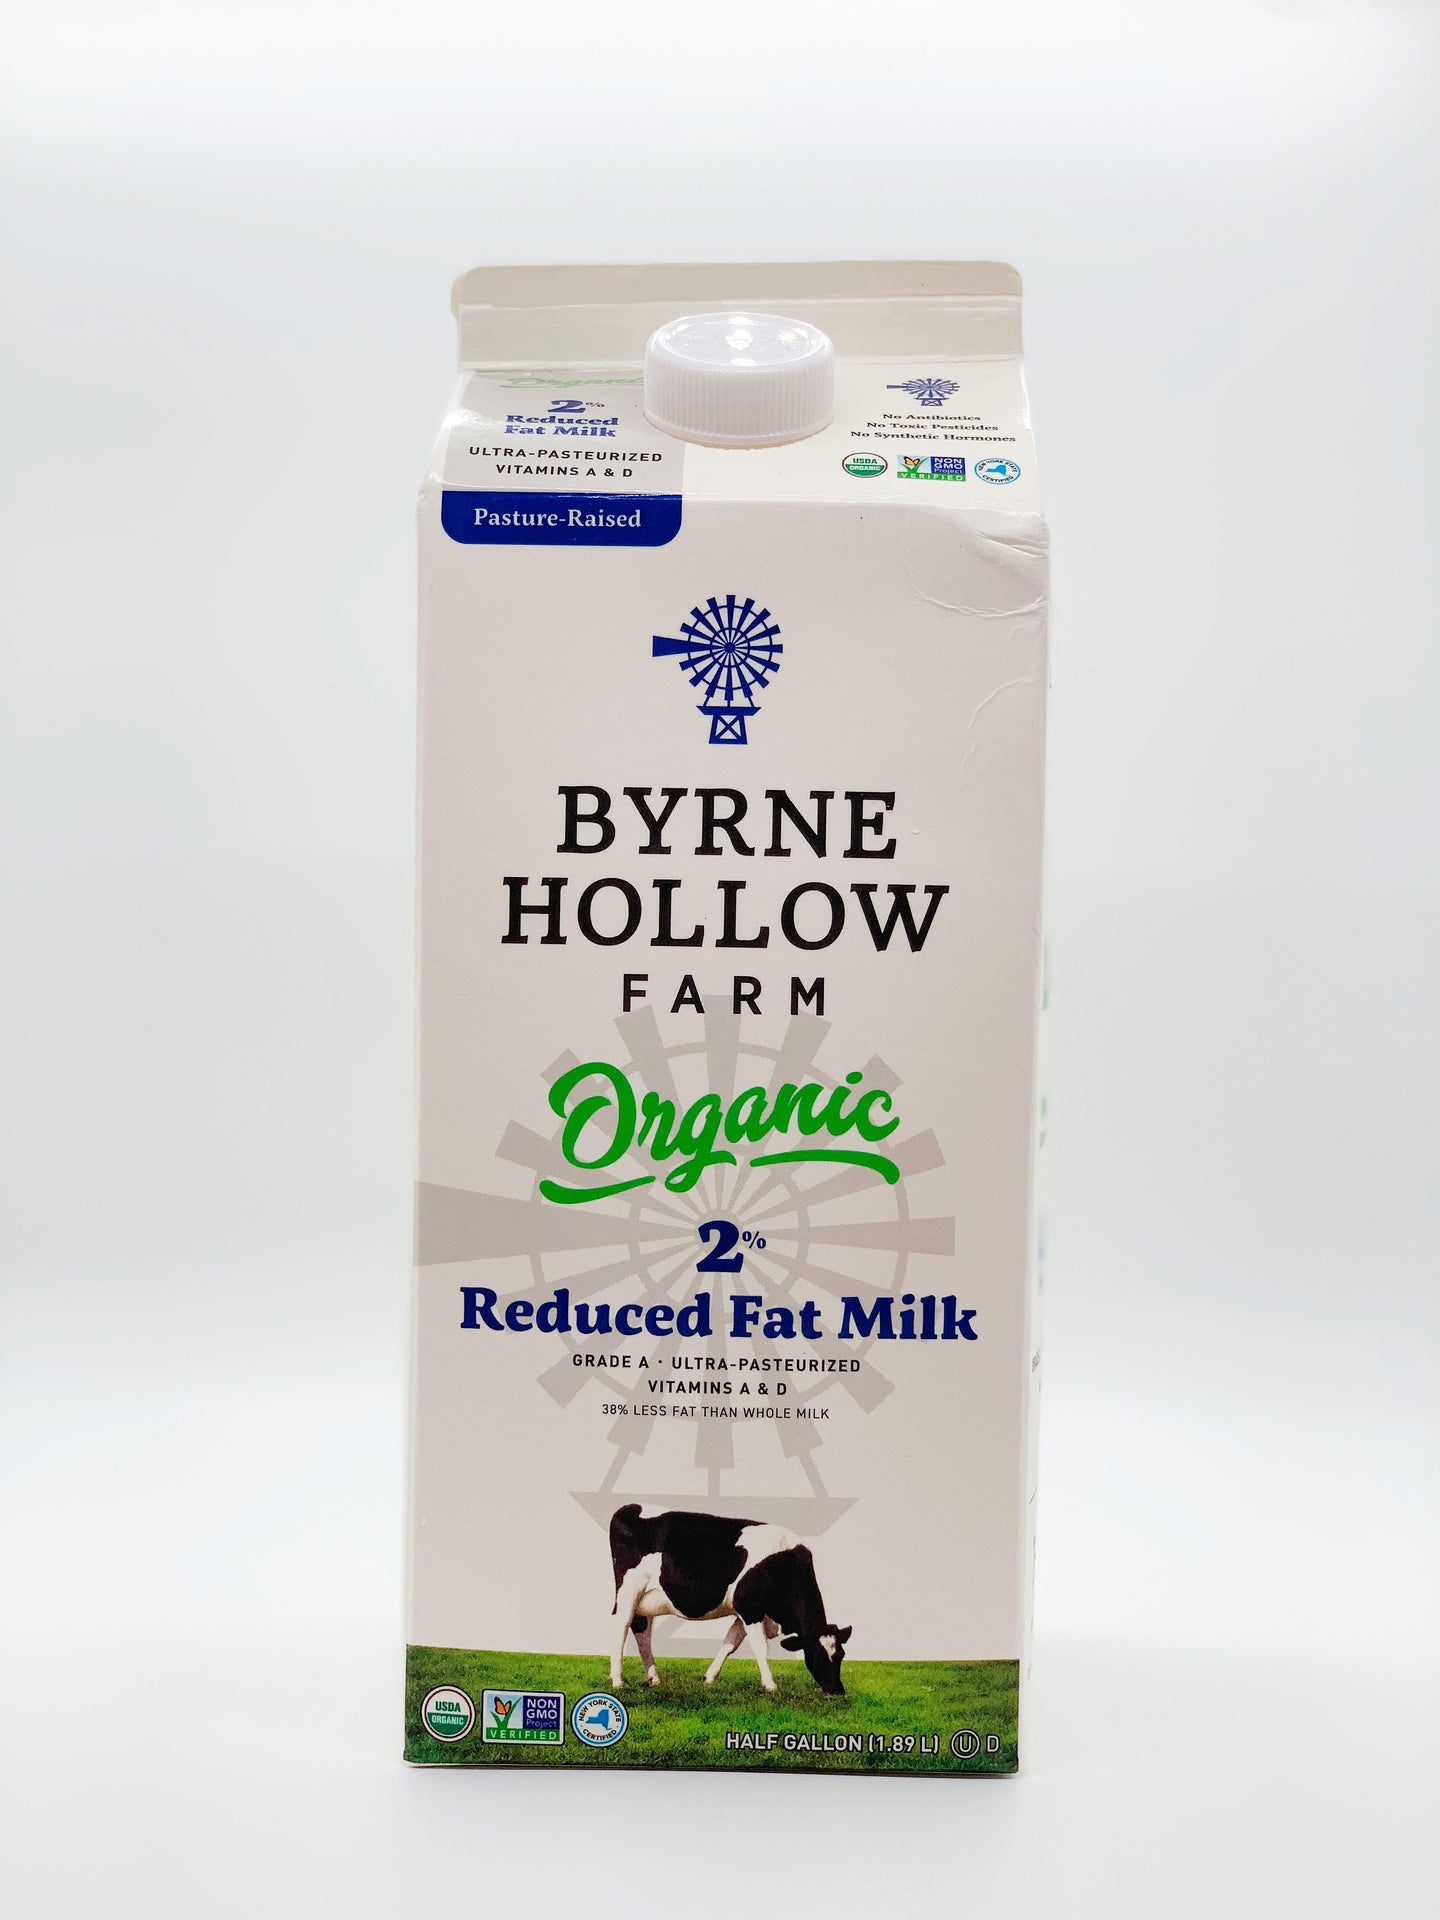 Byrne Hollow Organic 2% Reduced Fat Milk